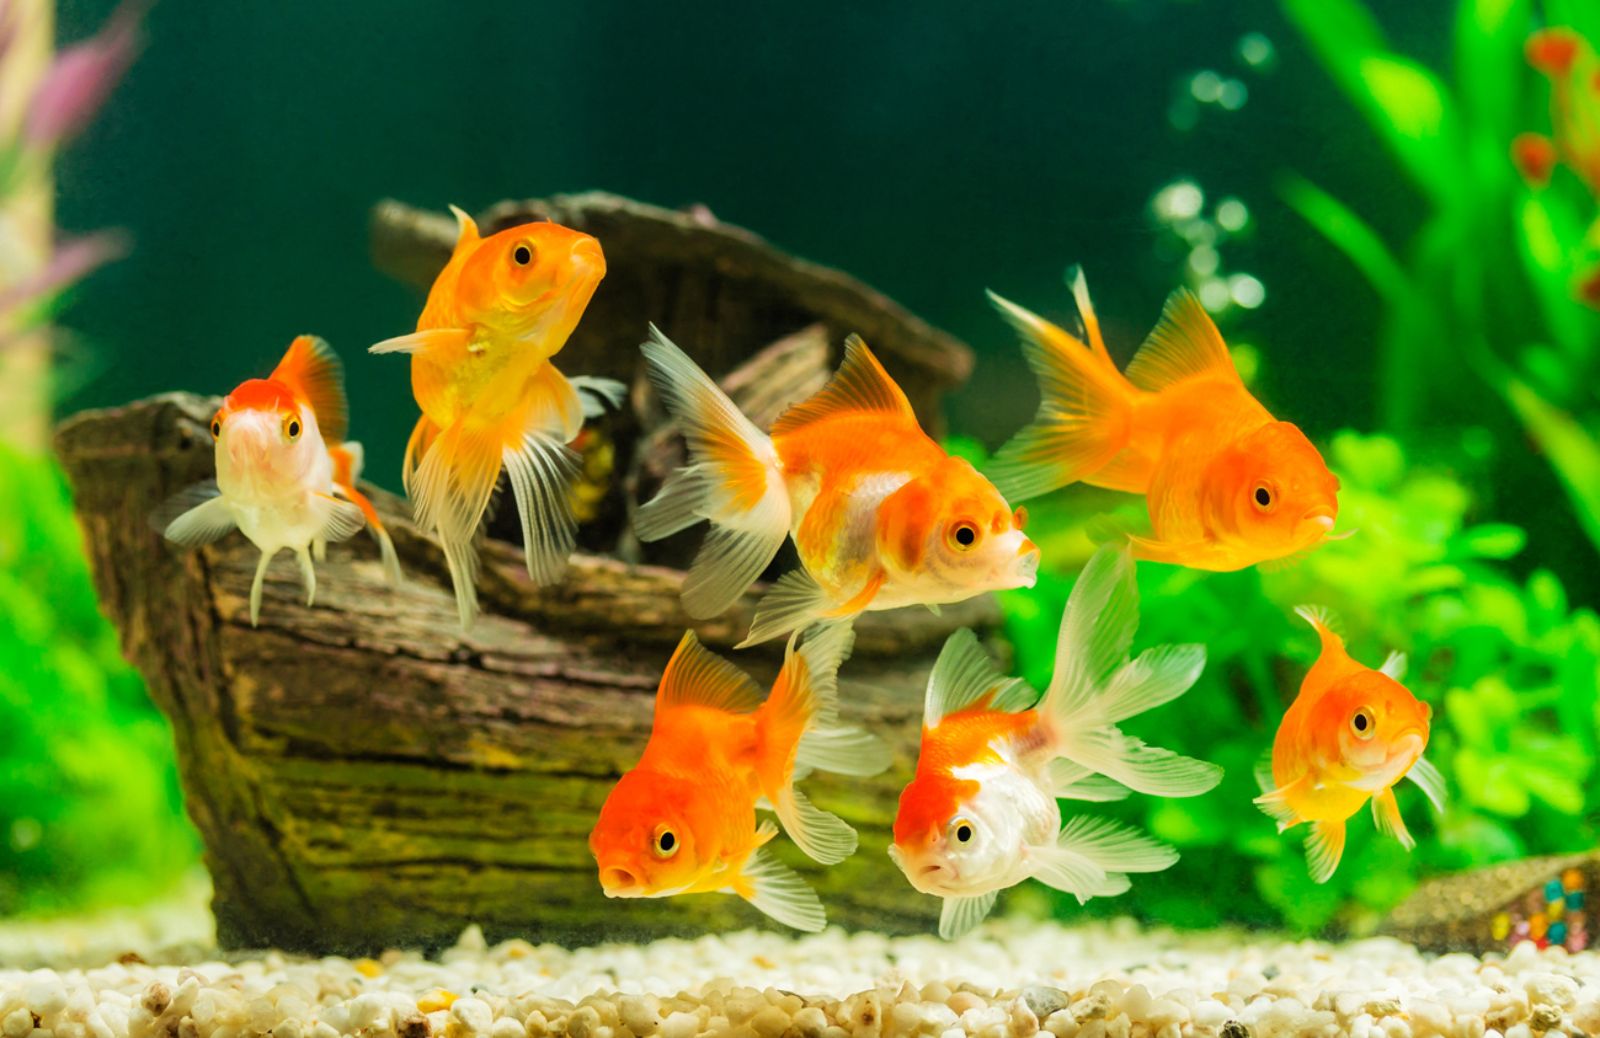 Come far riprodurre i pesci rossi in acquario | DeAbyDay